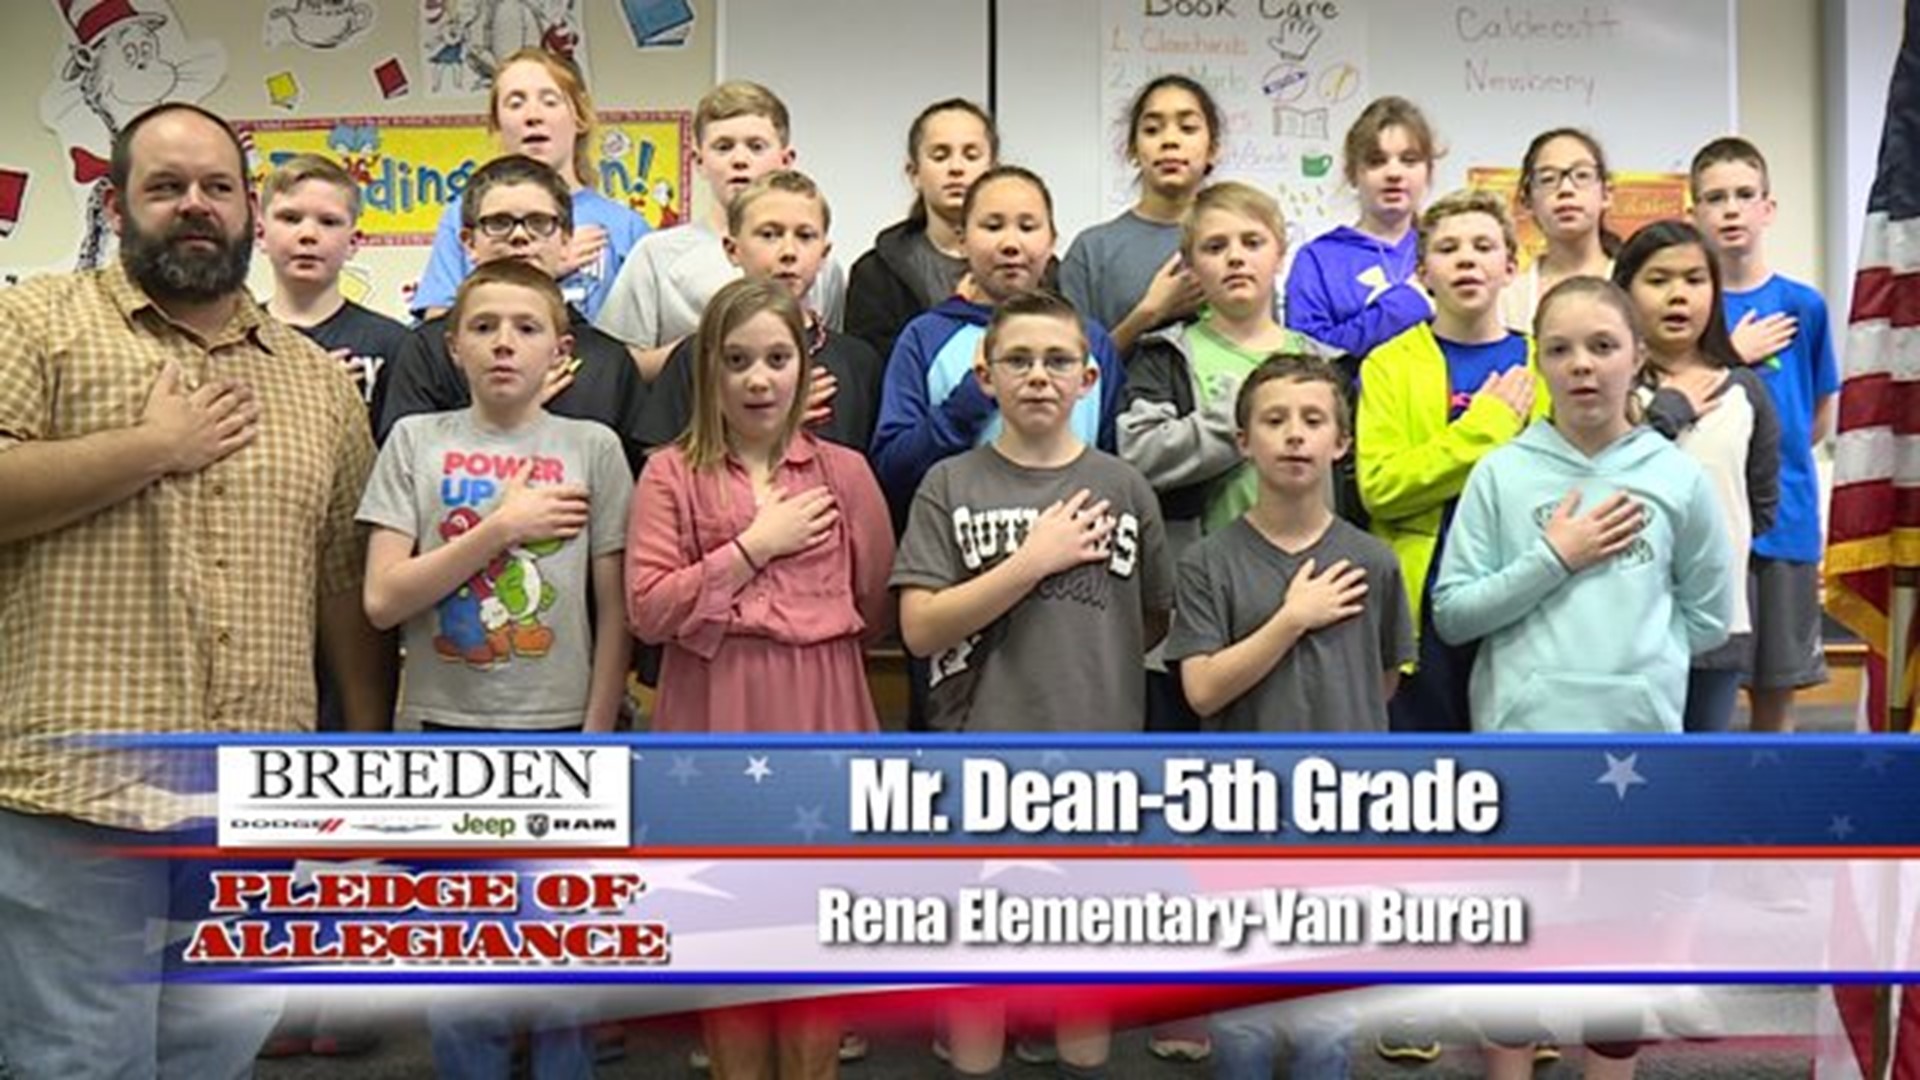 Rena Elementary - Van Buren, Mr. Dean - Fifth Grade